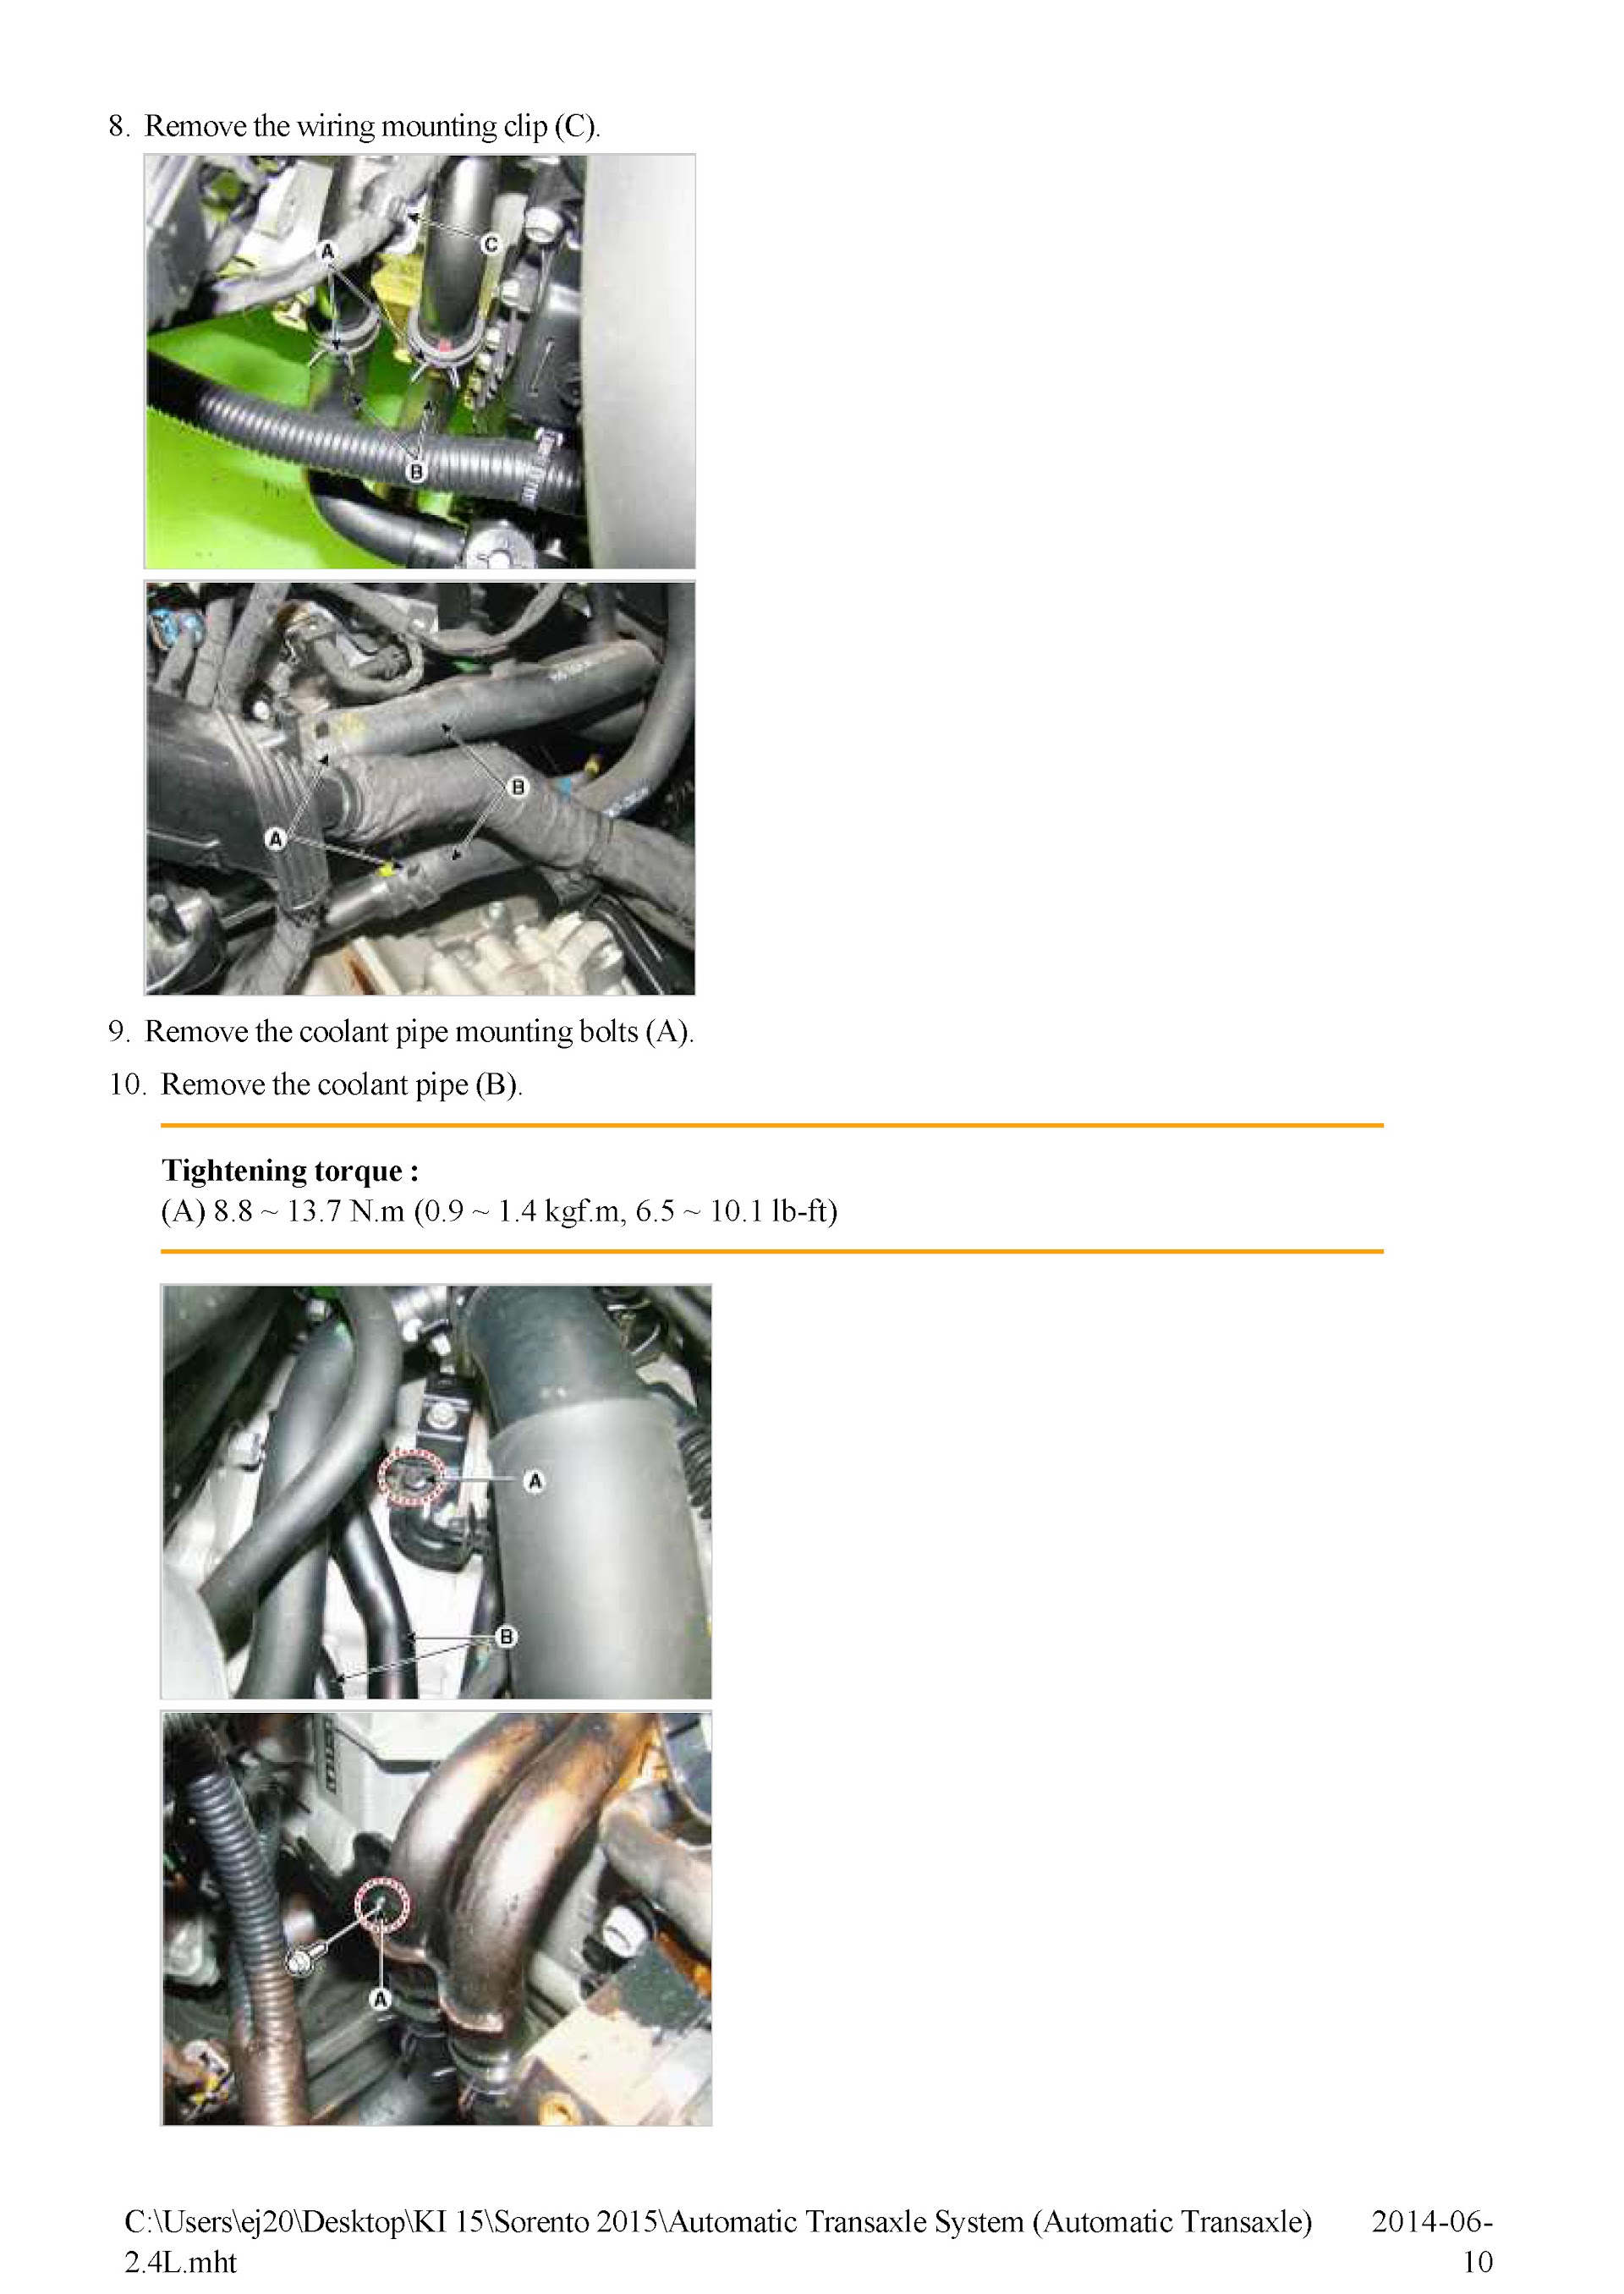 2015-2018 Kia Sorento Repair Manual